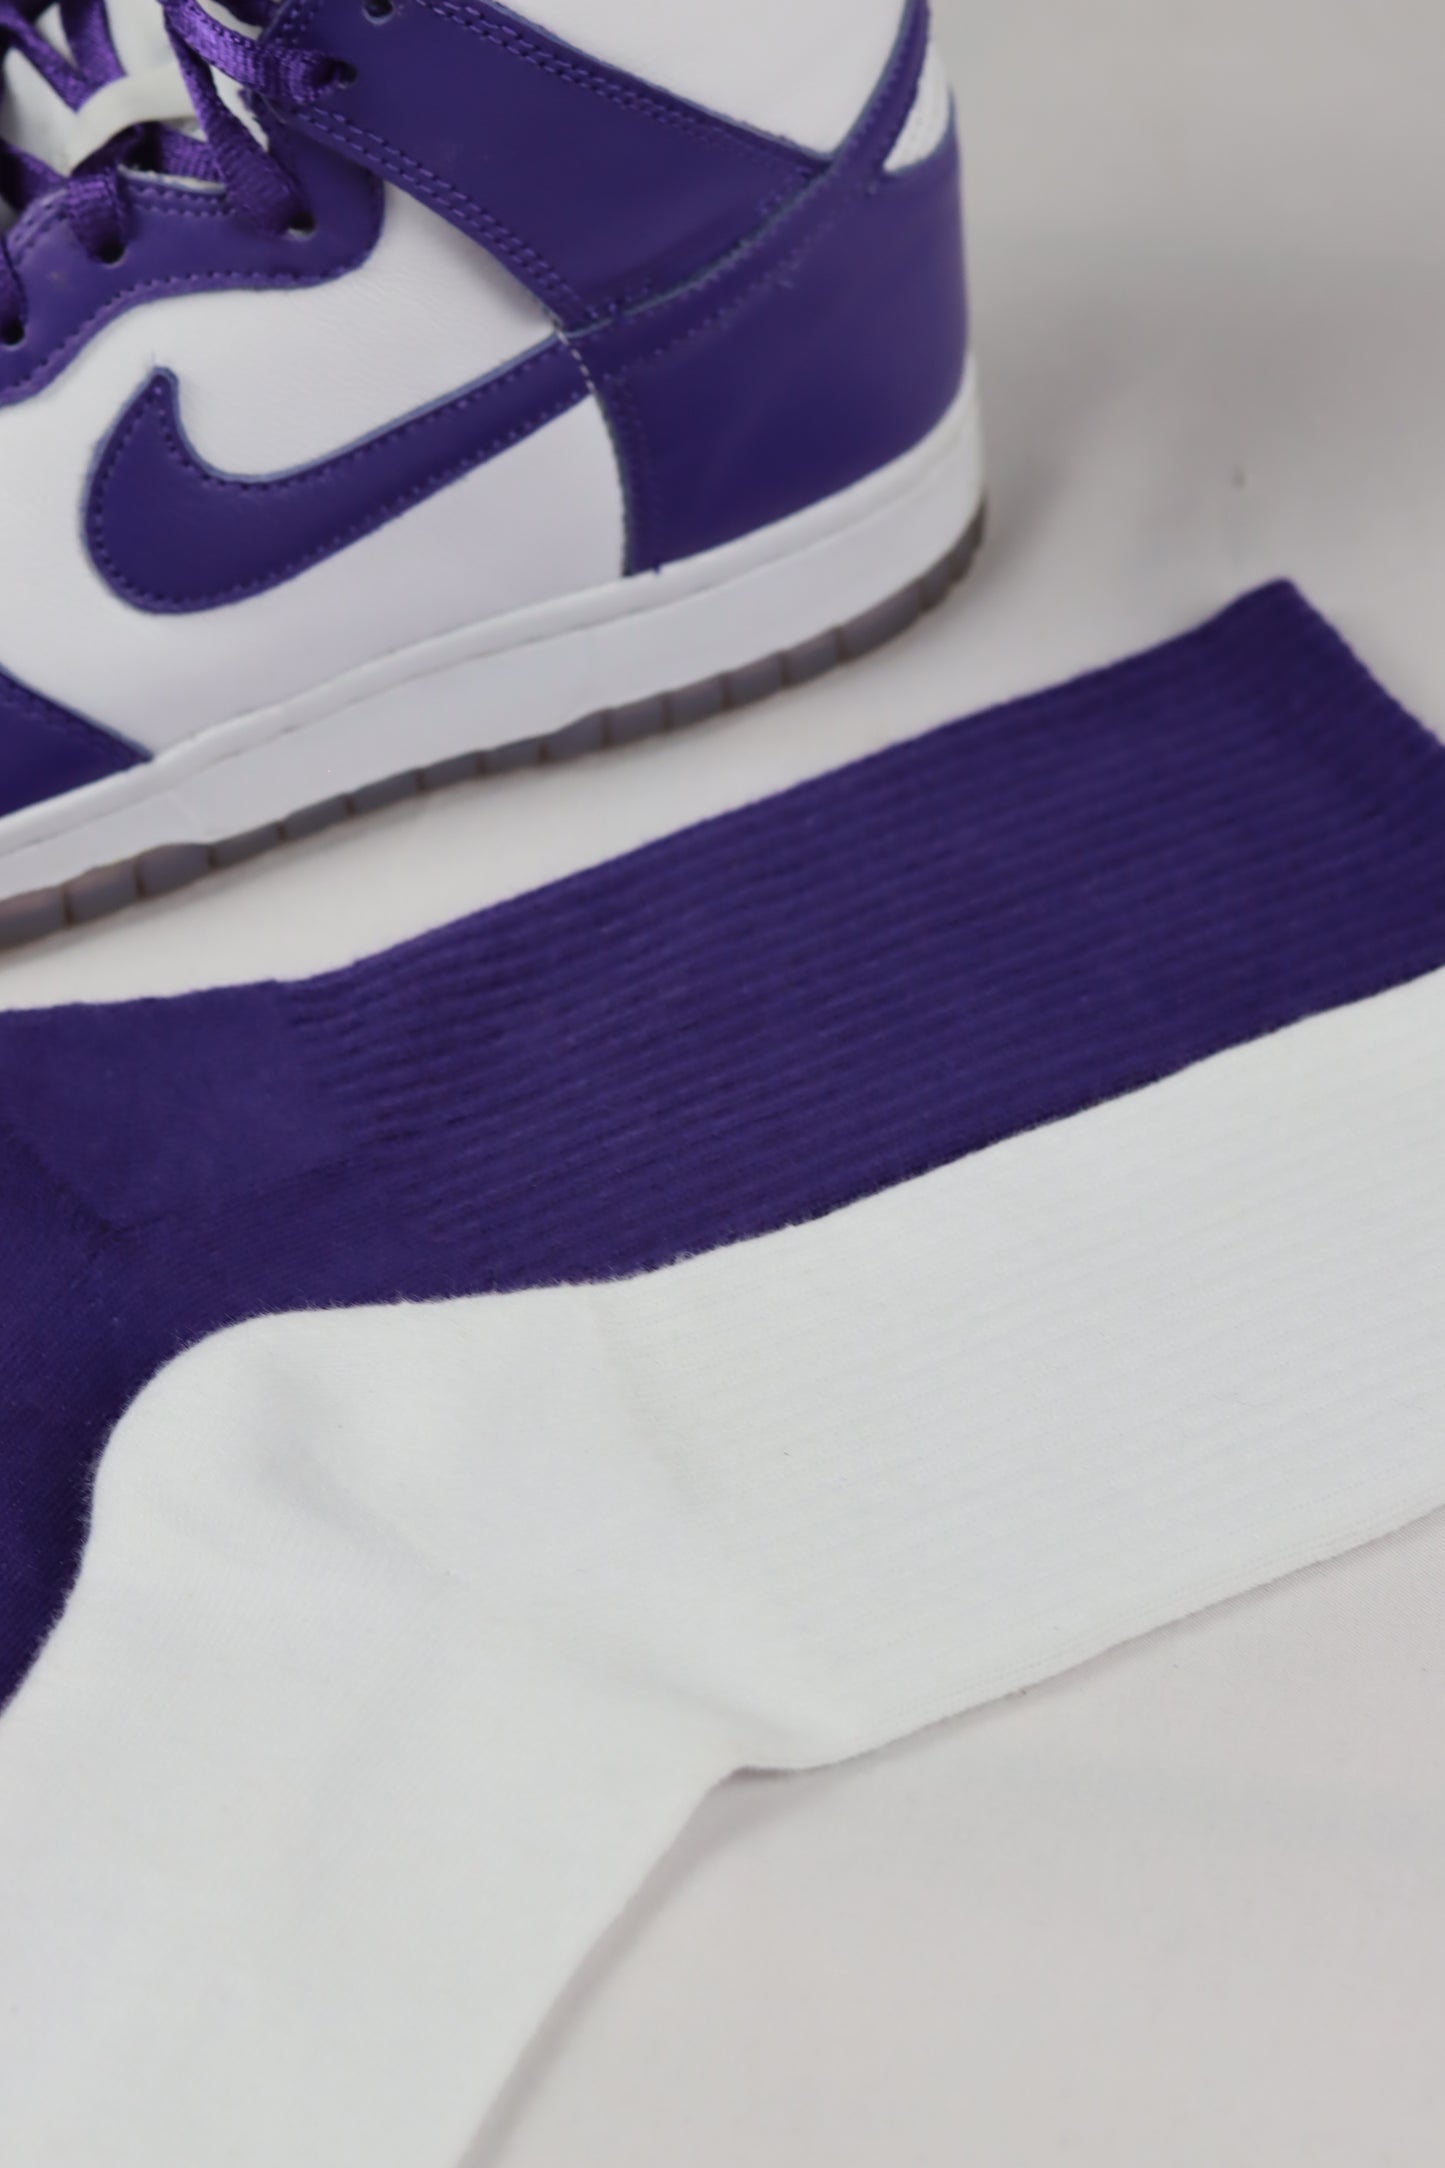 Court Purple Socks